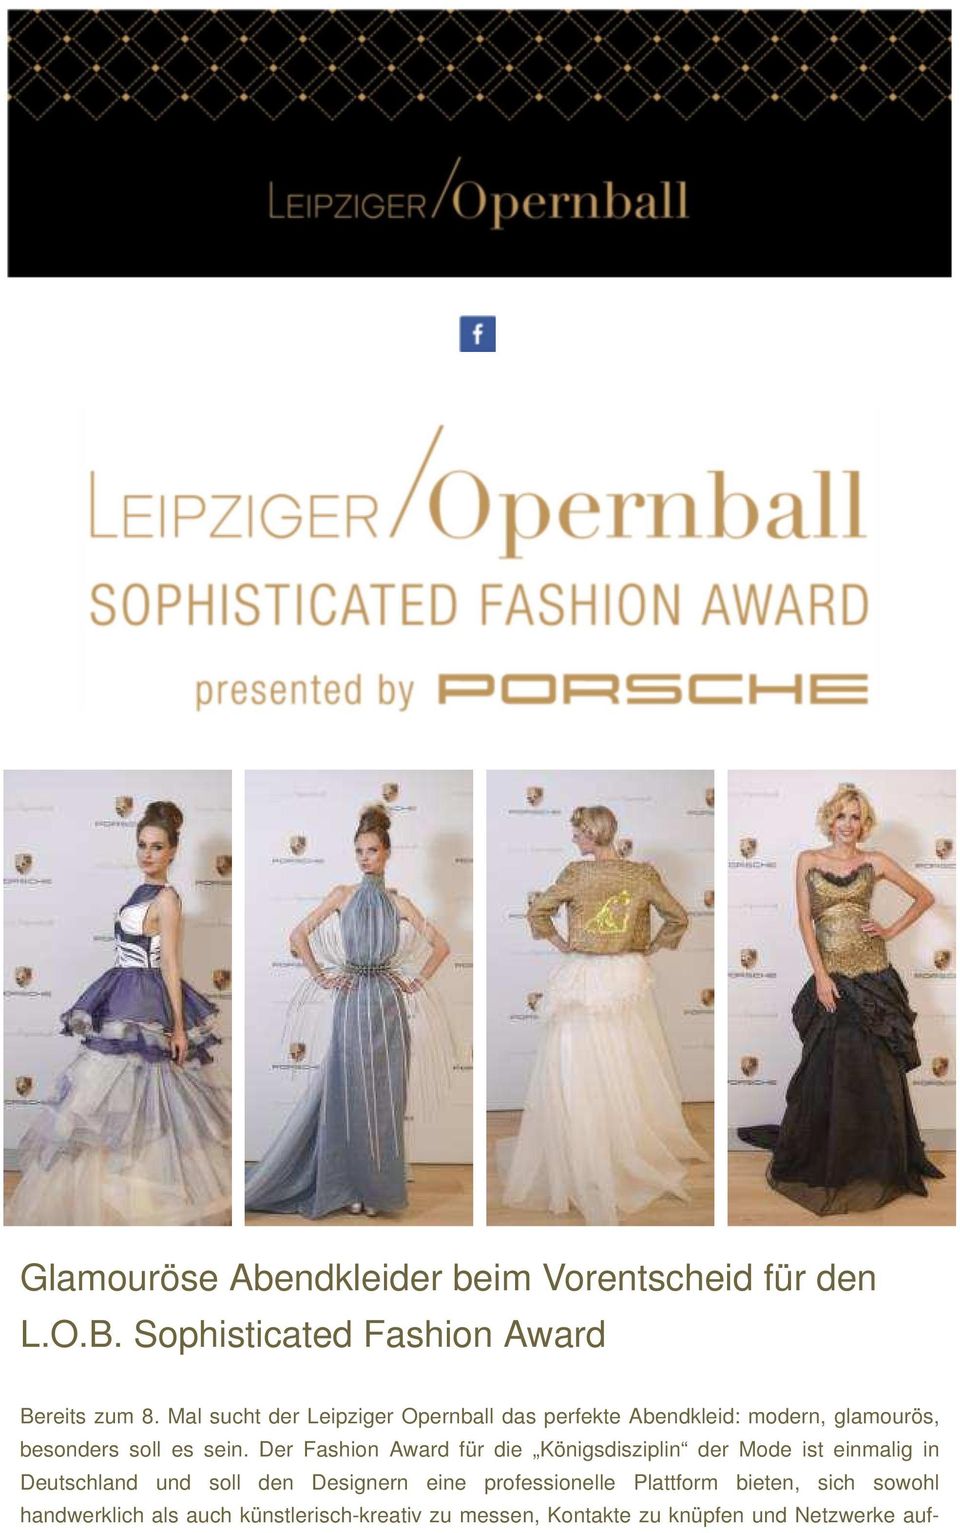 Der Fashion Award für die Königsdisziplin der Mode ist einmalig in Deutschland und soll den Designern eine